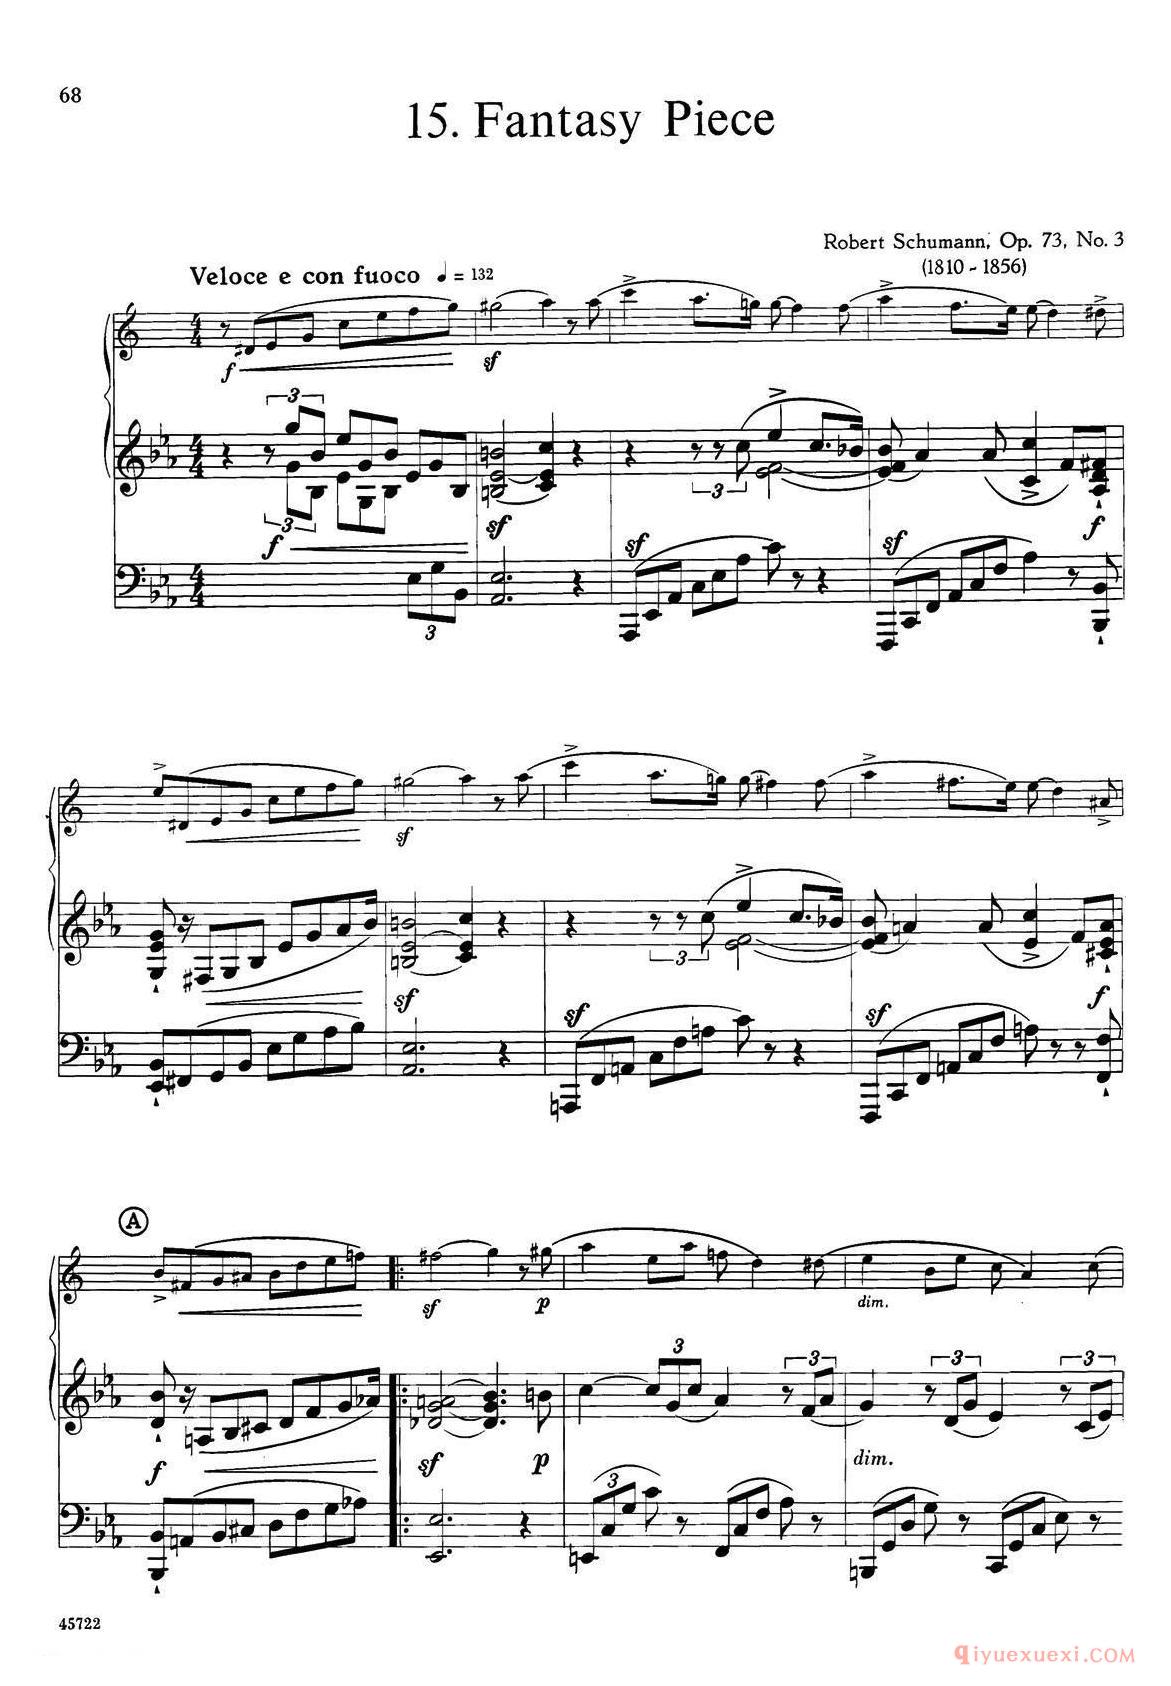 15首古典萨克斯独奏曲《15、Fantasy Piece》中音萨克斯+钢琴伴奏